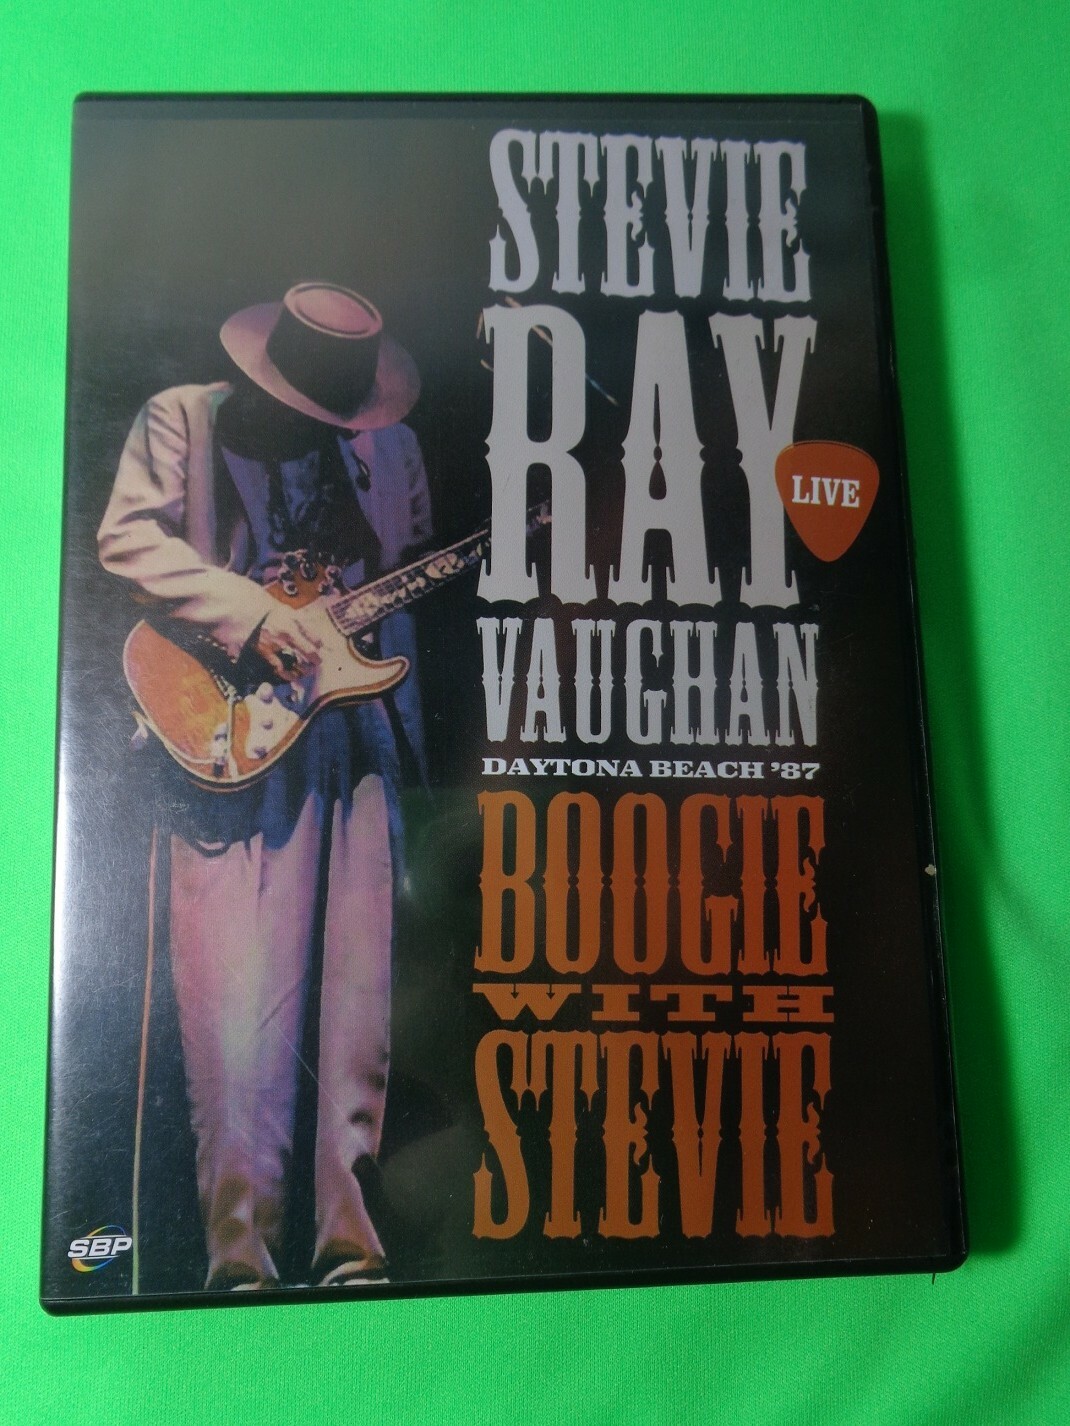 DVD - Stevie Ray Vaughan - Boogie With Steve Daytona Beach 87